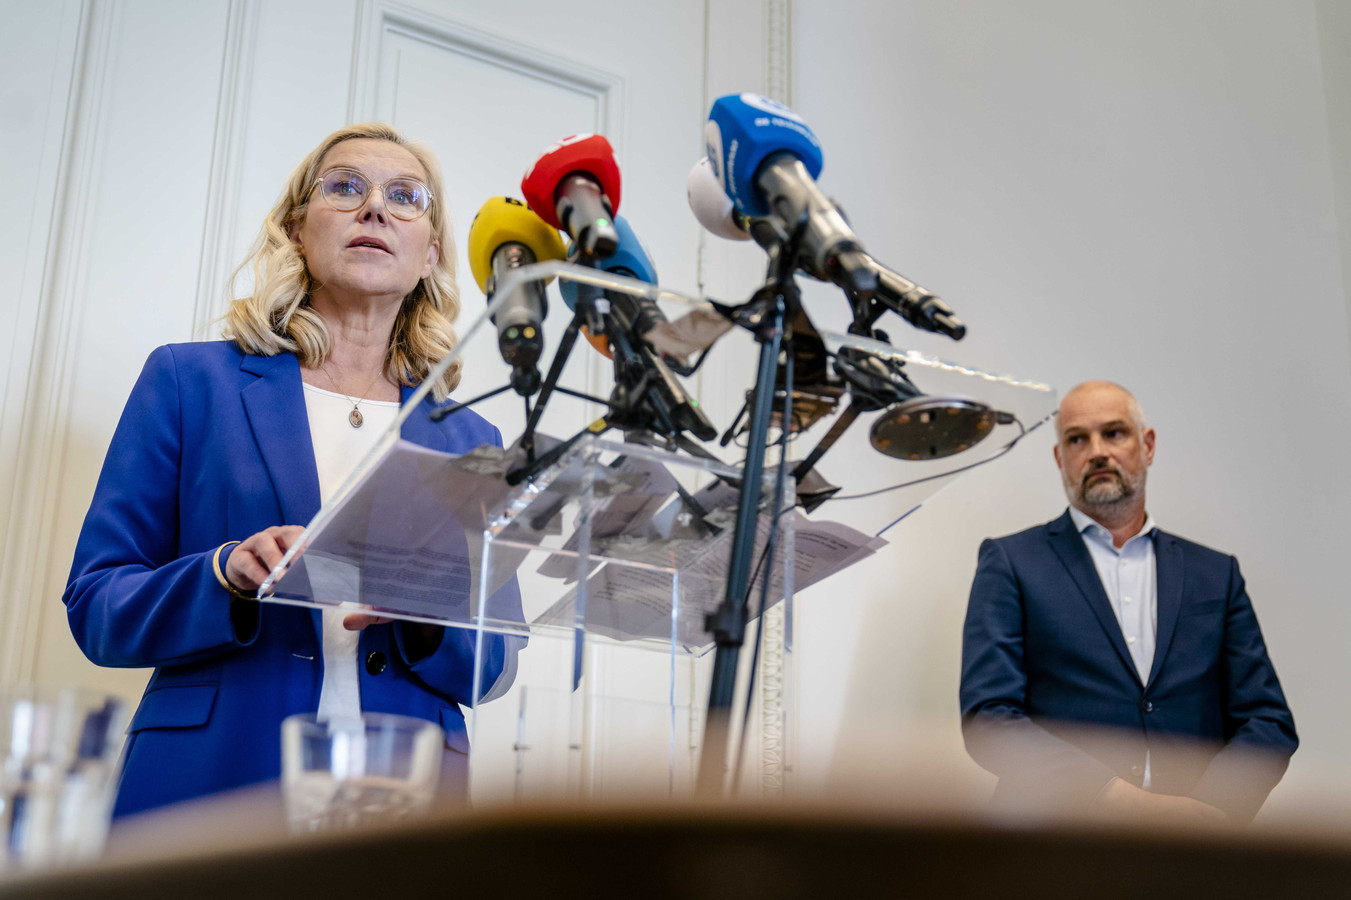 D66-leider Sigrid Kaag en partijvoorzitter Victor Everhardt geven een toelichting op de affaire van grensoverschrijdend gedrag rond partijprominent Frans van Drimmelen.